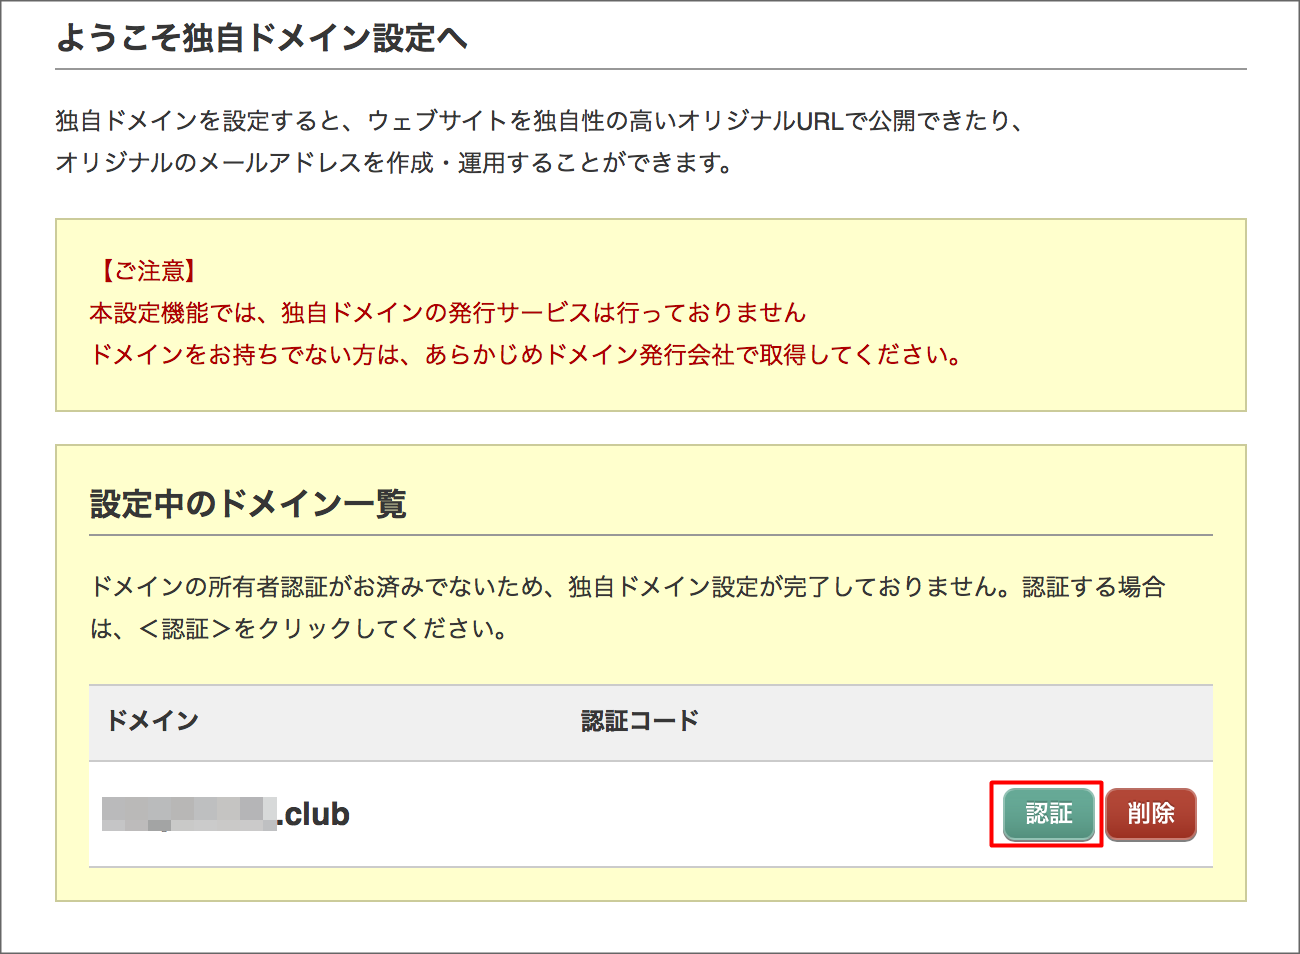 http://www.digitalstage.jp/support/weblife/manual/02-05-17_004.png